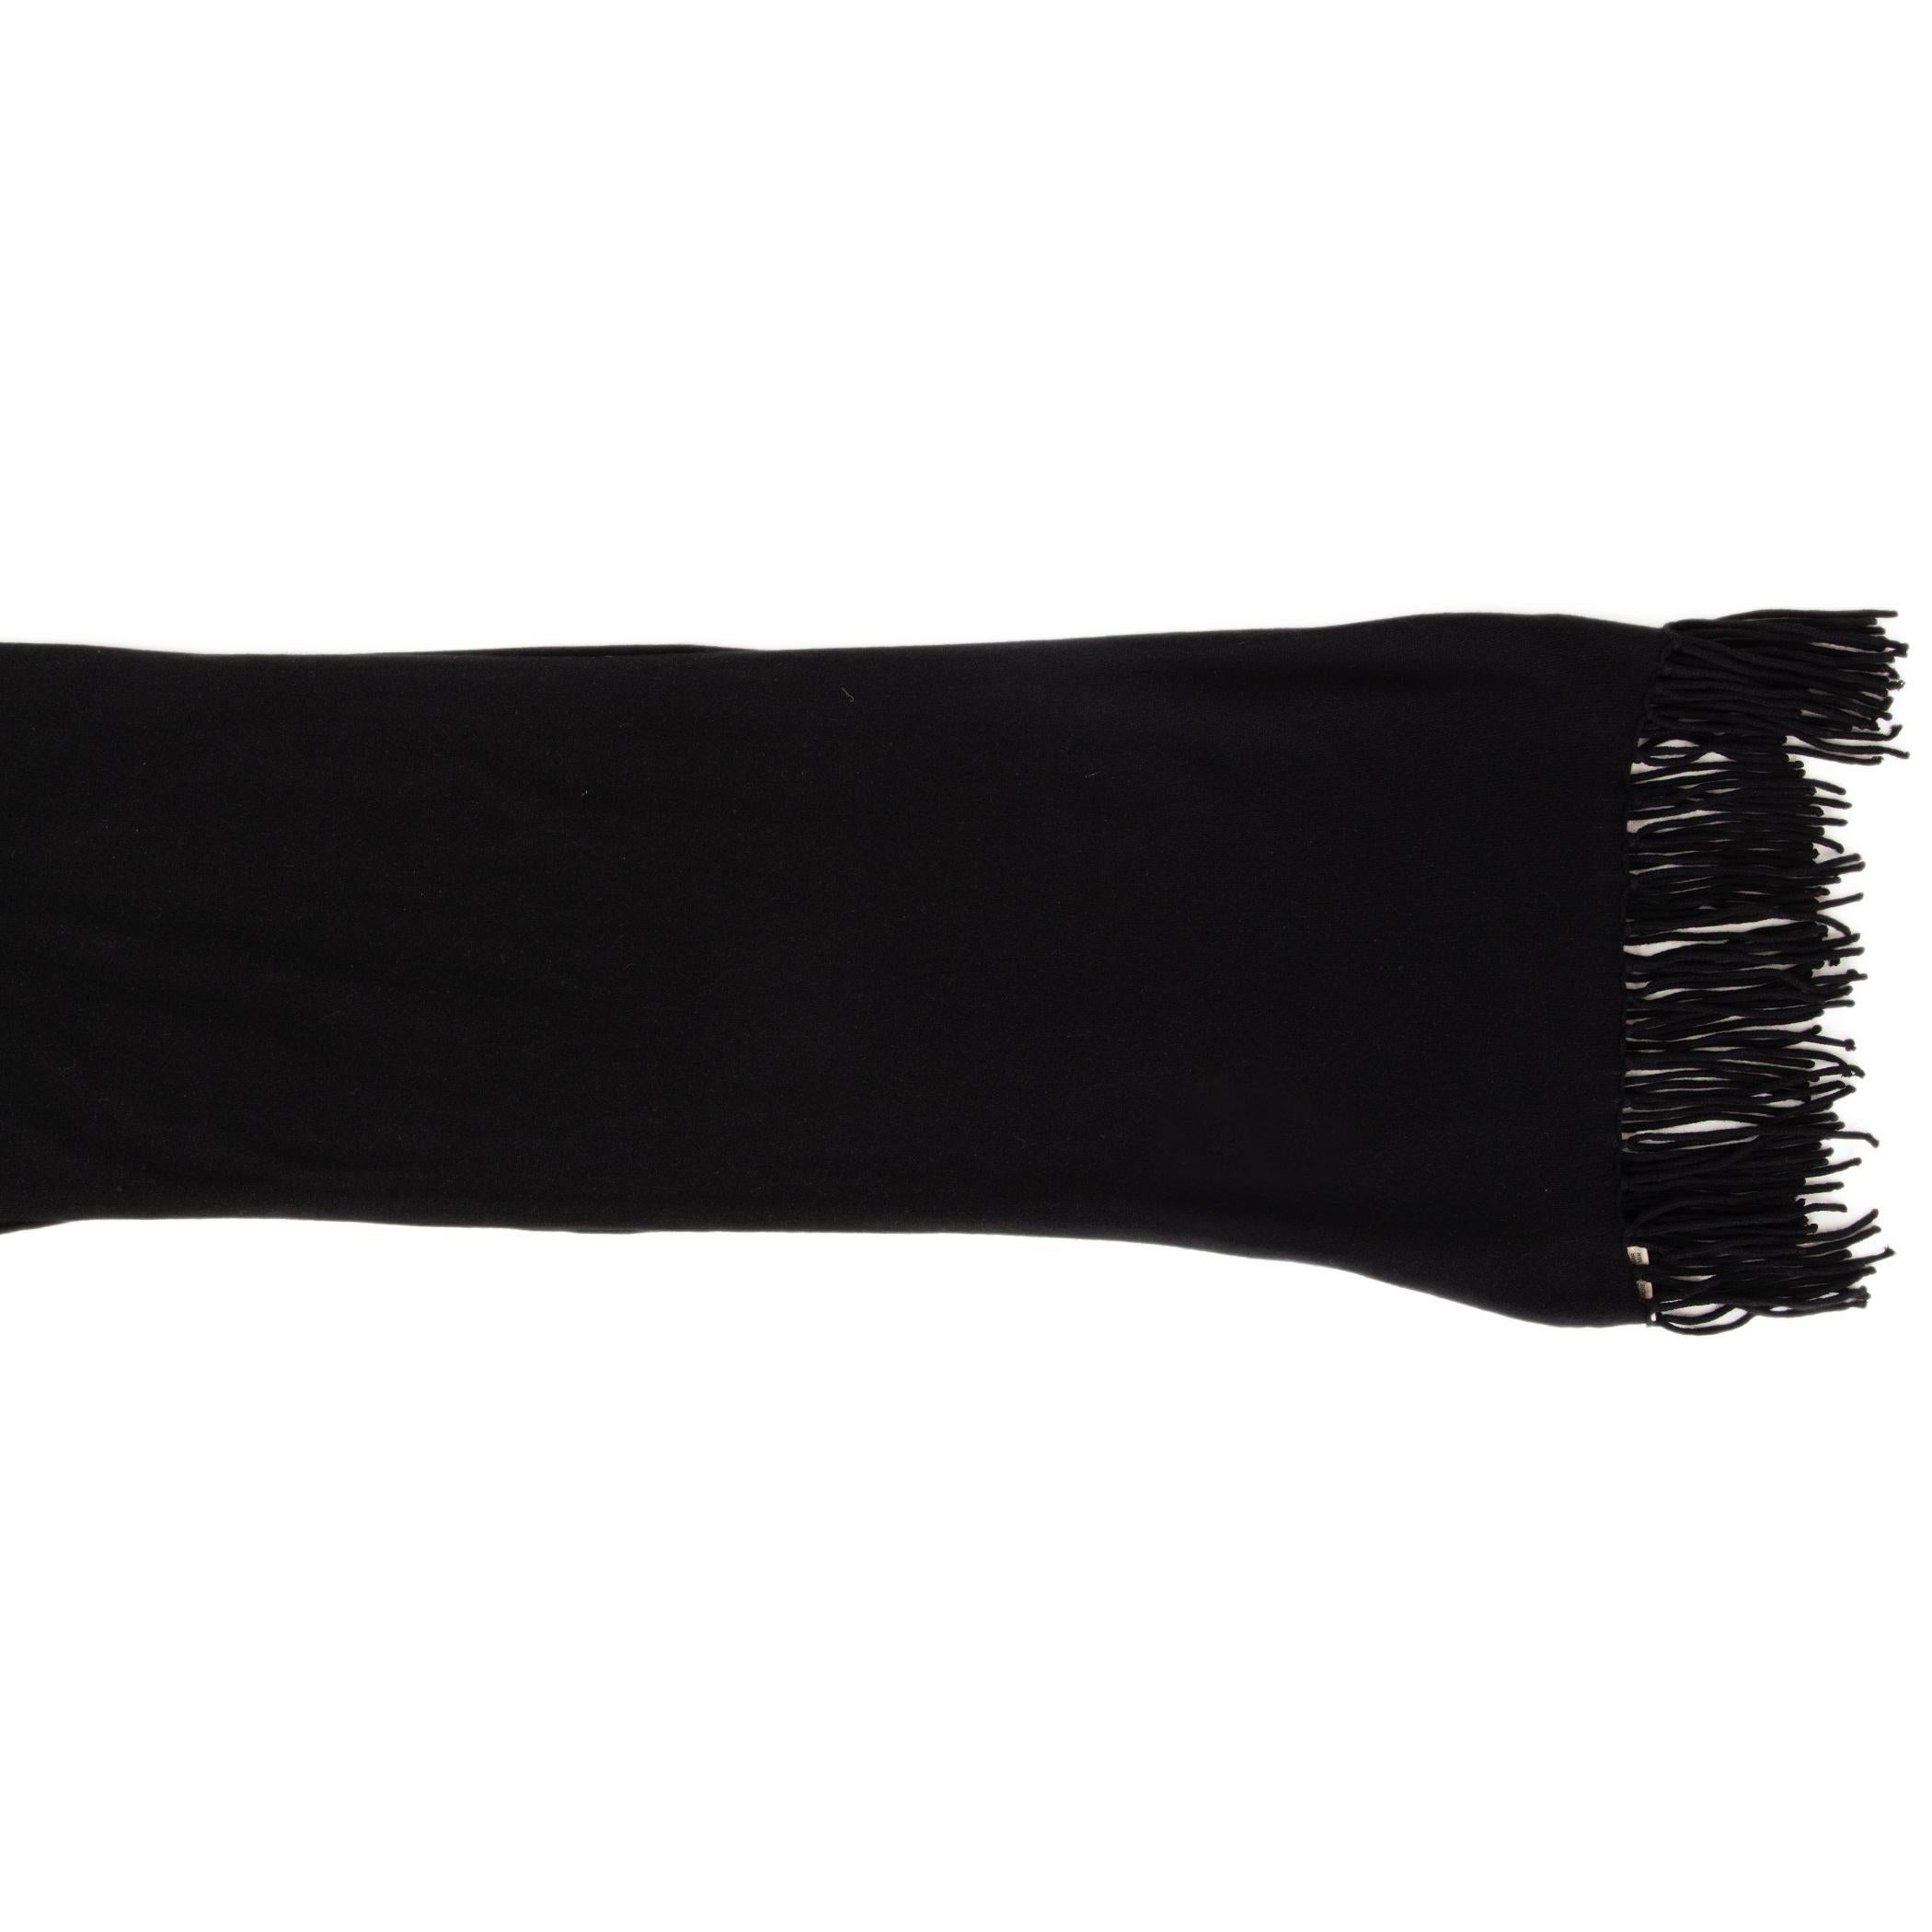 Hermes Skinny-Schal aus schwarzem Kaschmir-Jersey (100%) mit Fransen an den Enden. Wurde getragen und ist in ausgezeichnetem Zustand.

Breite 30cm (11.7in)
Länge 200cm (78in)
